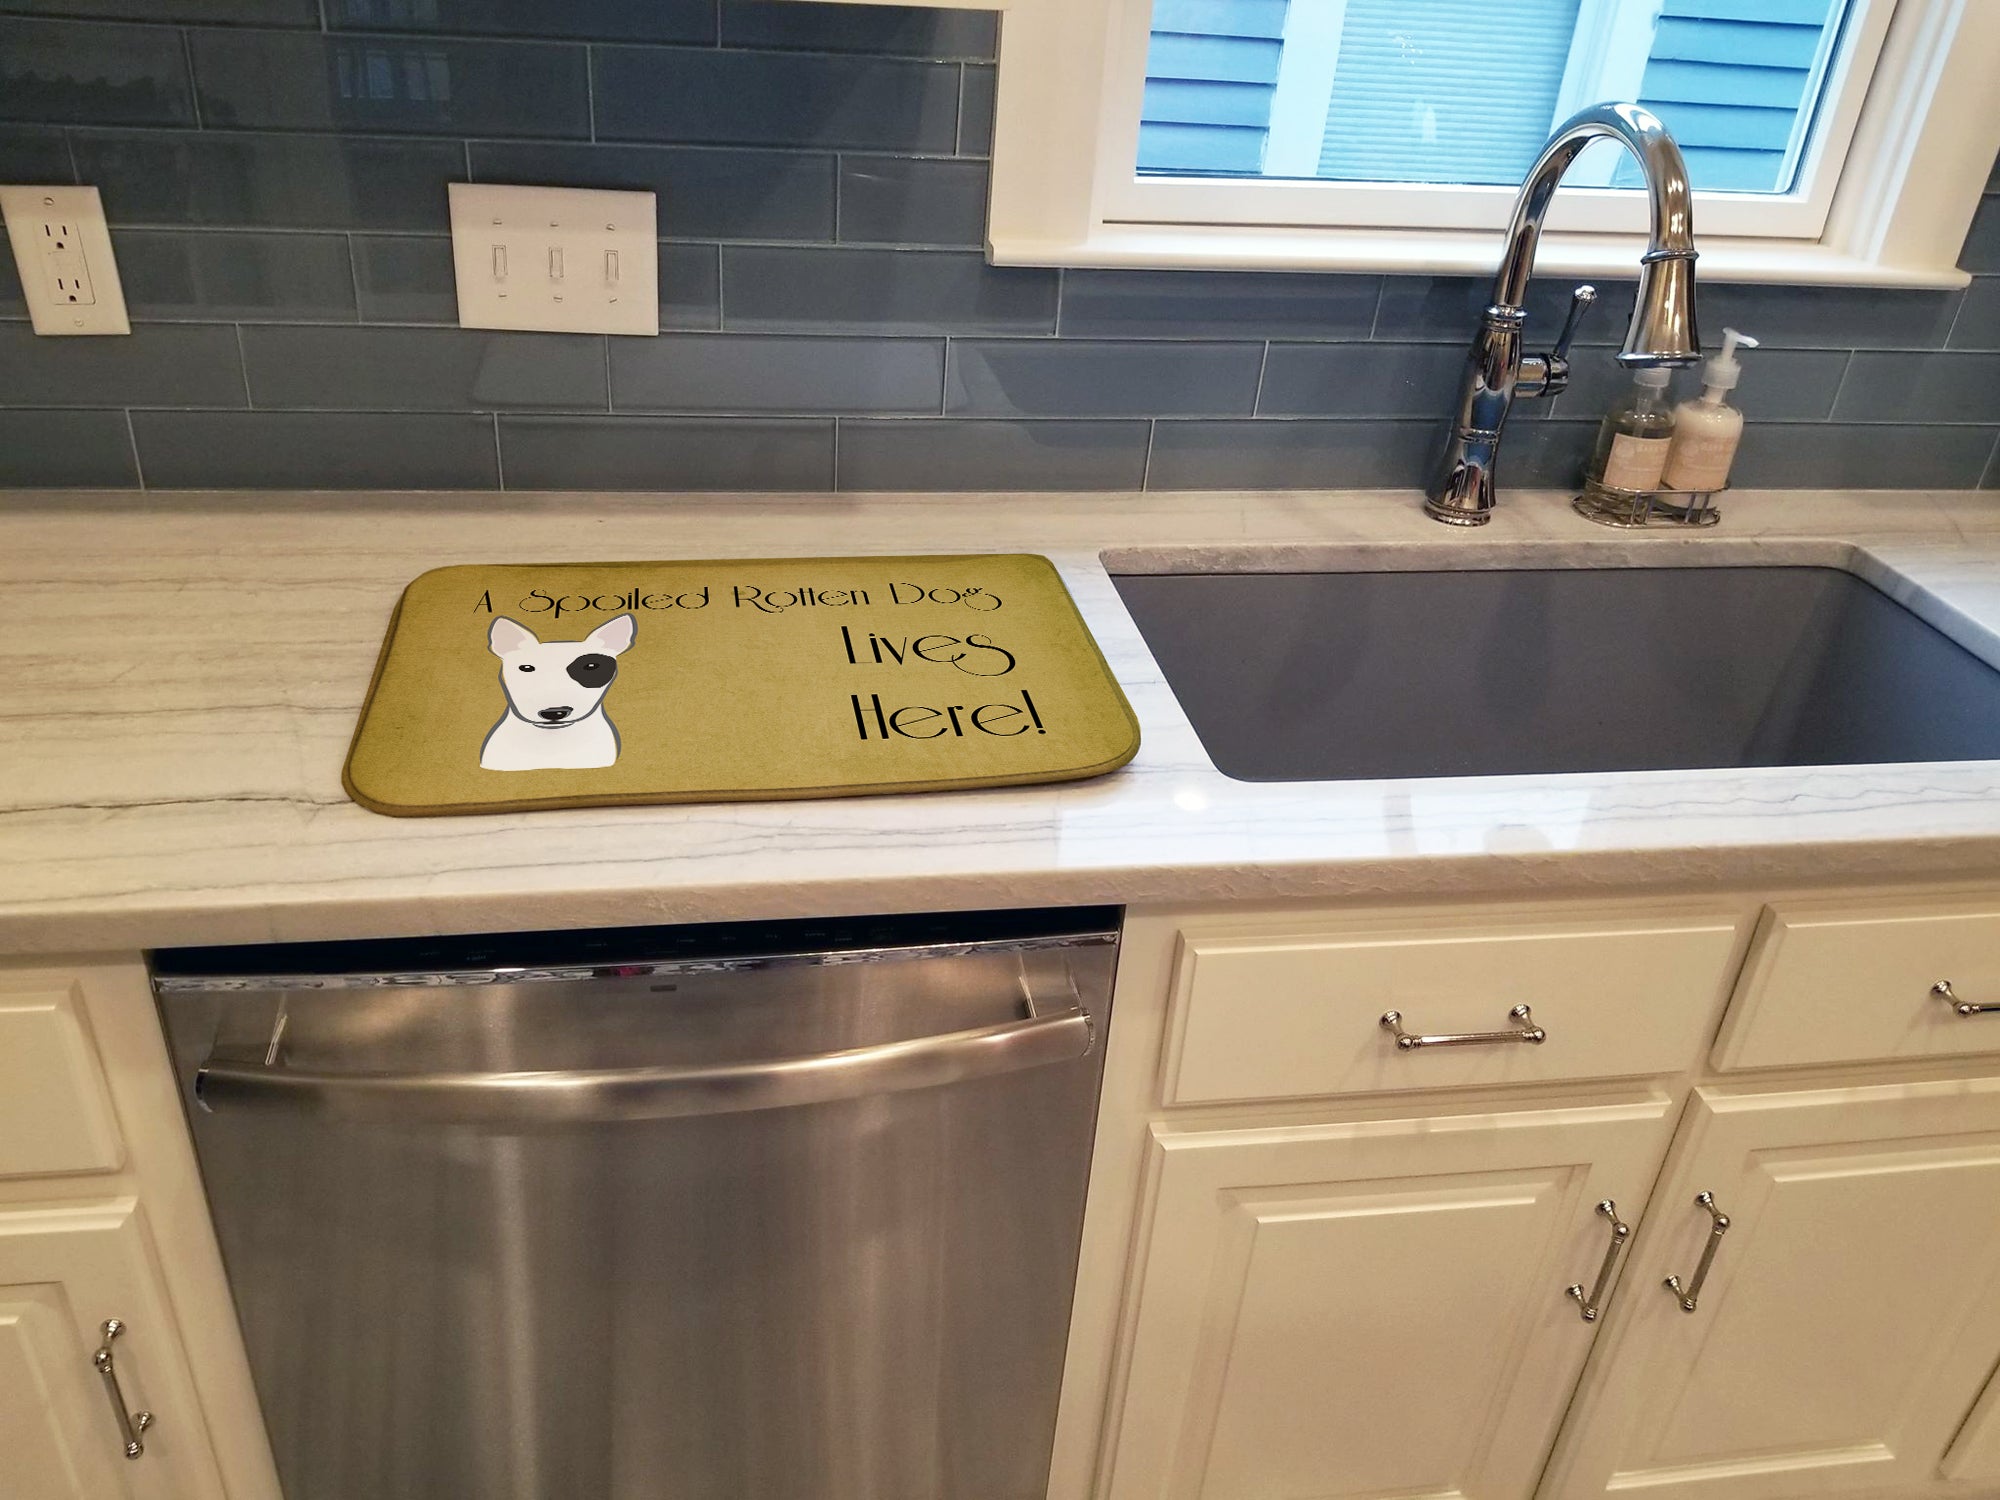 Bull Terrier Spoiled Dog Lives Here Dish Drying Mat BB1457DDM